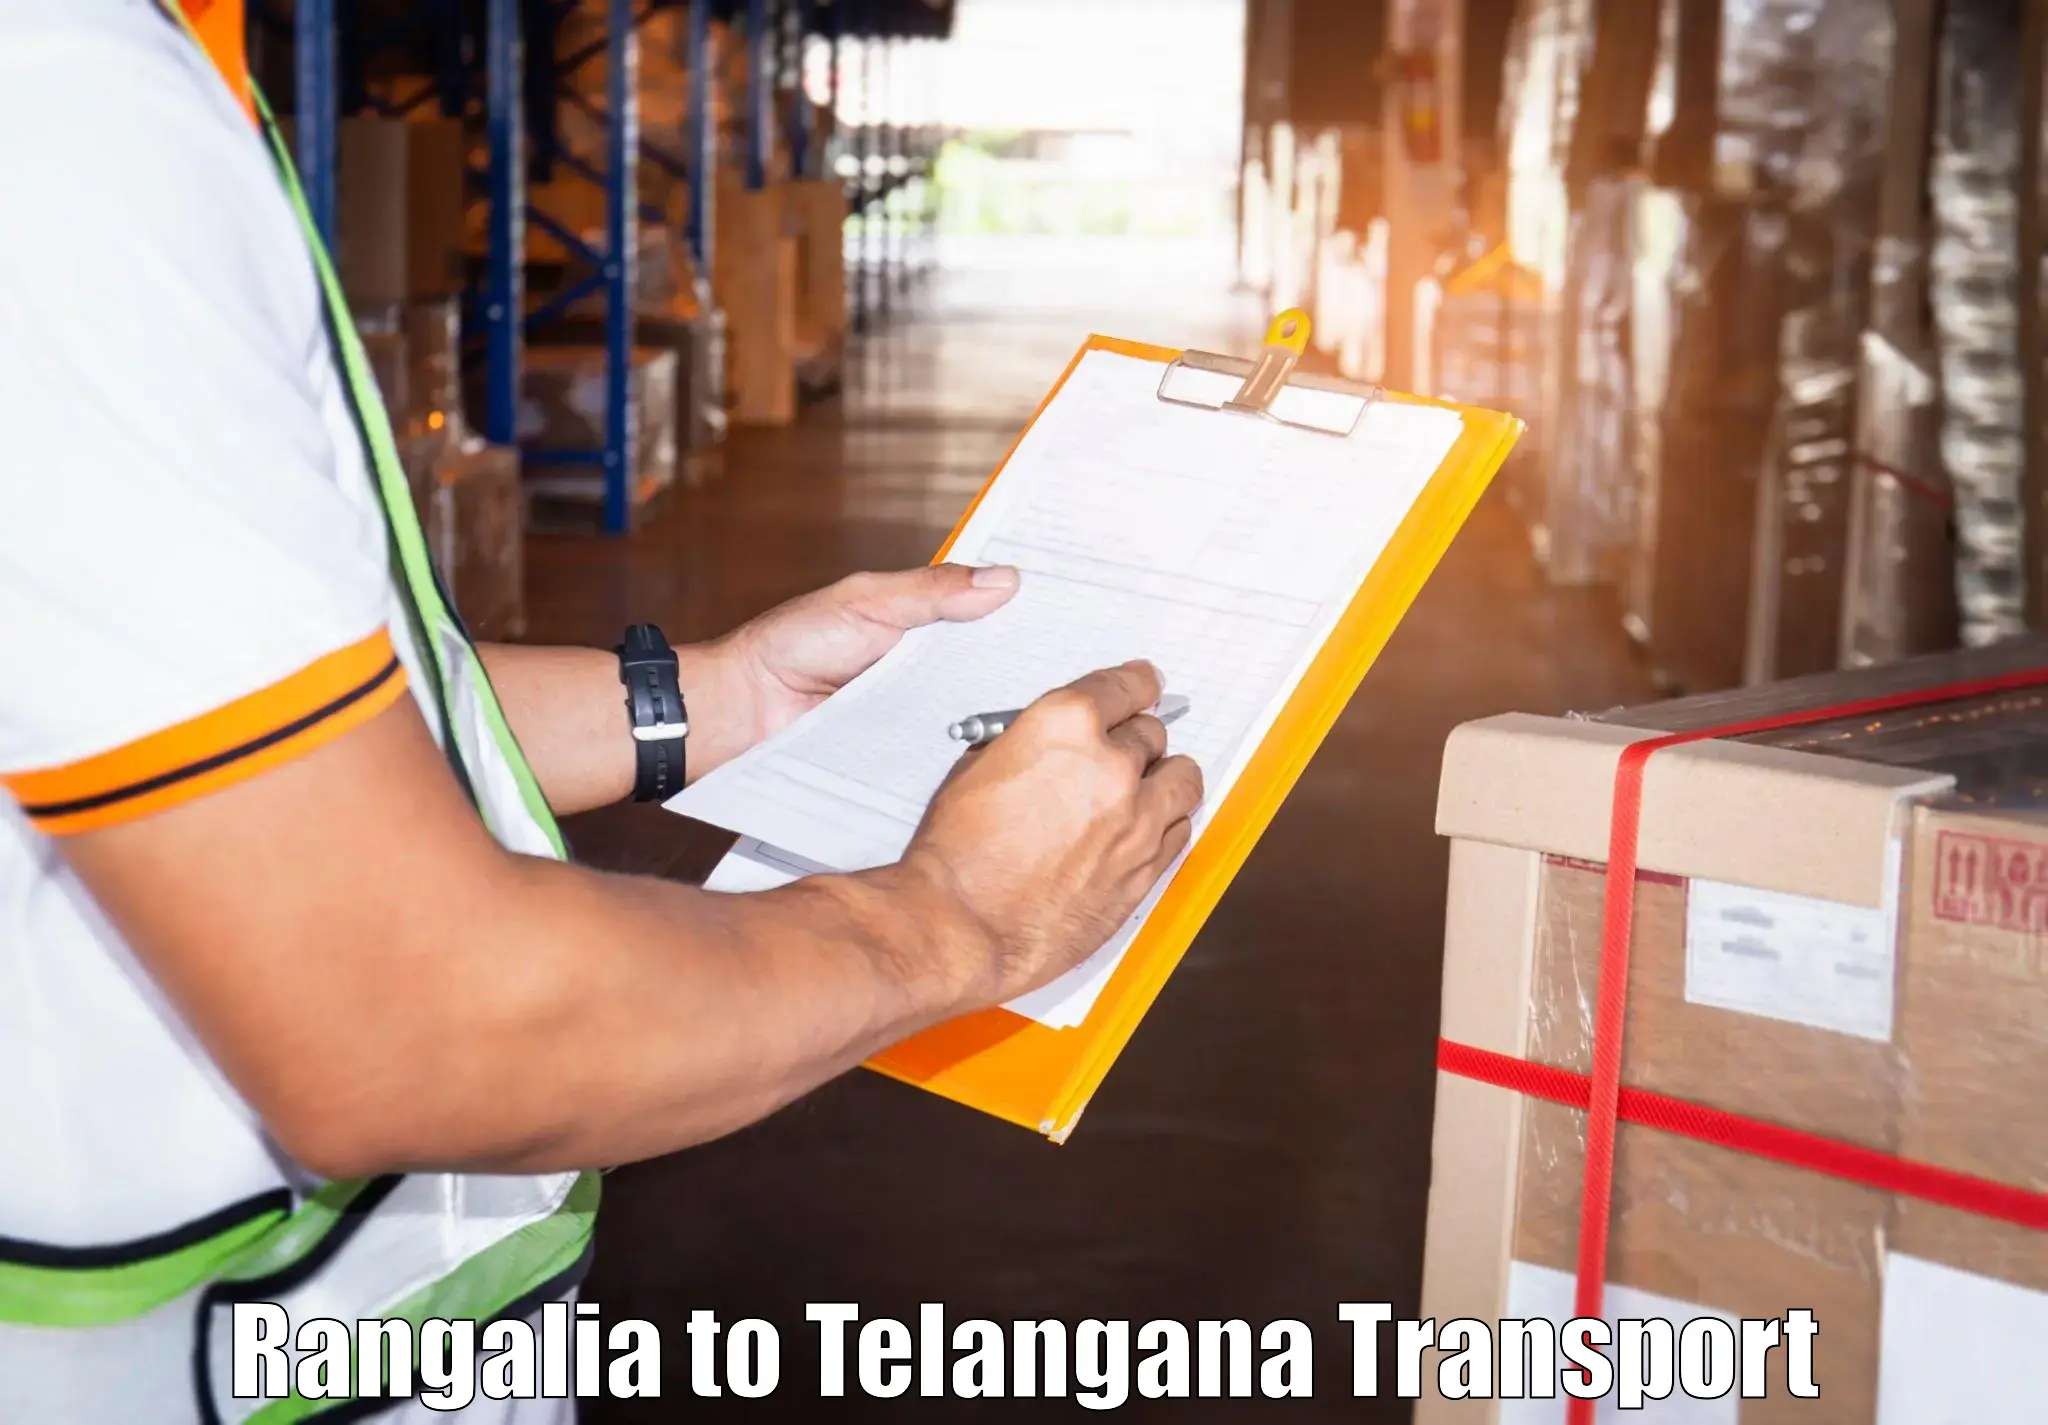 Truck transport companies in India Rangalia to Yacharam